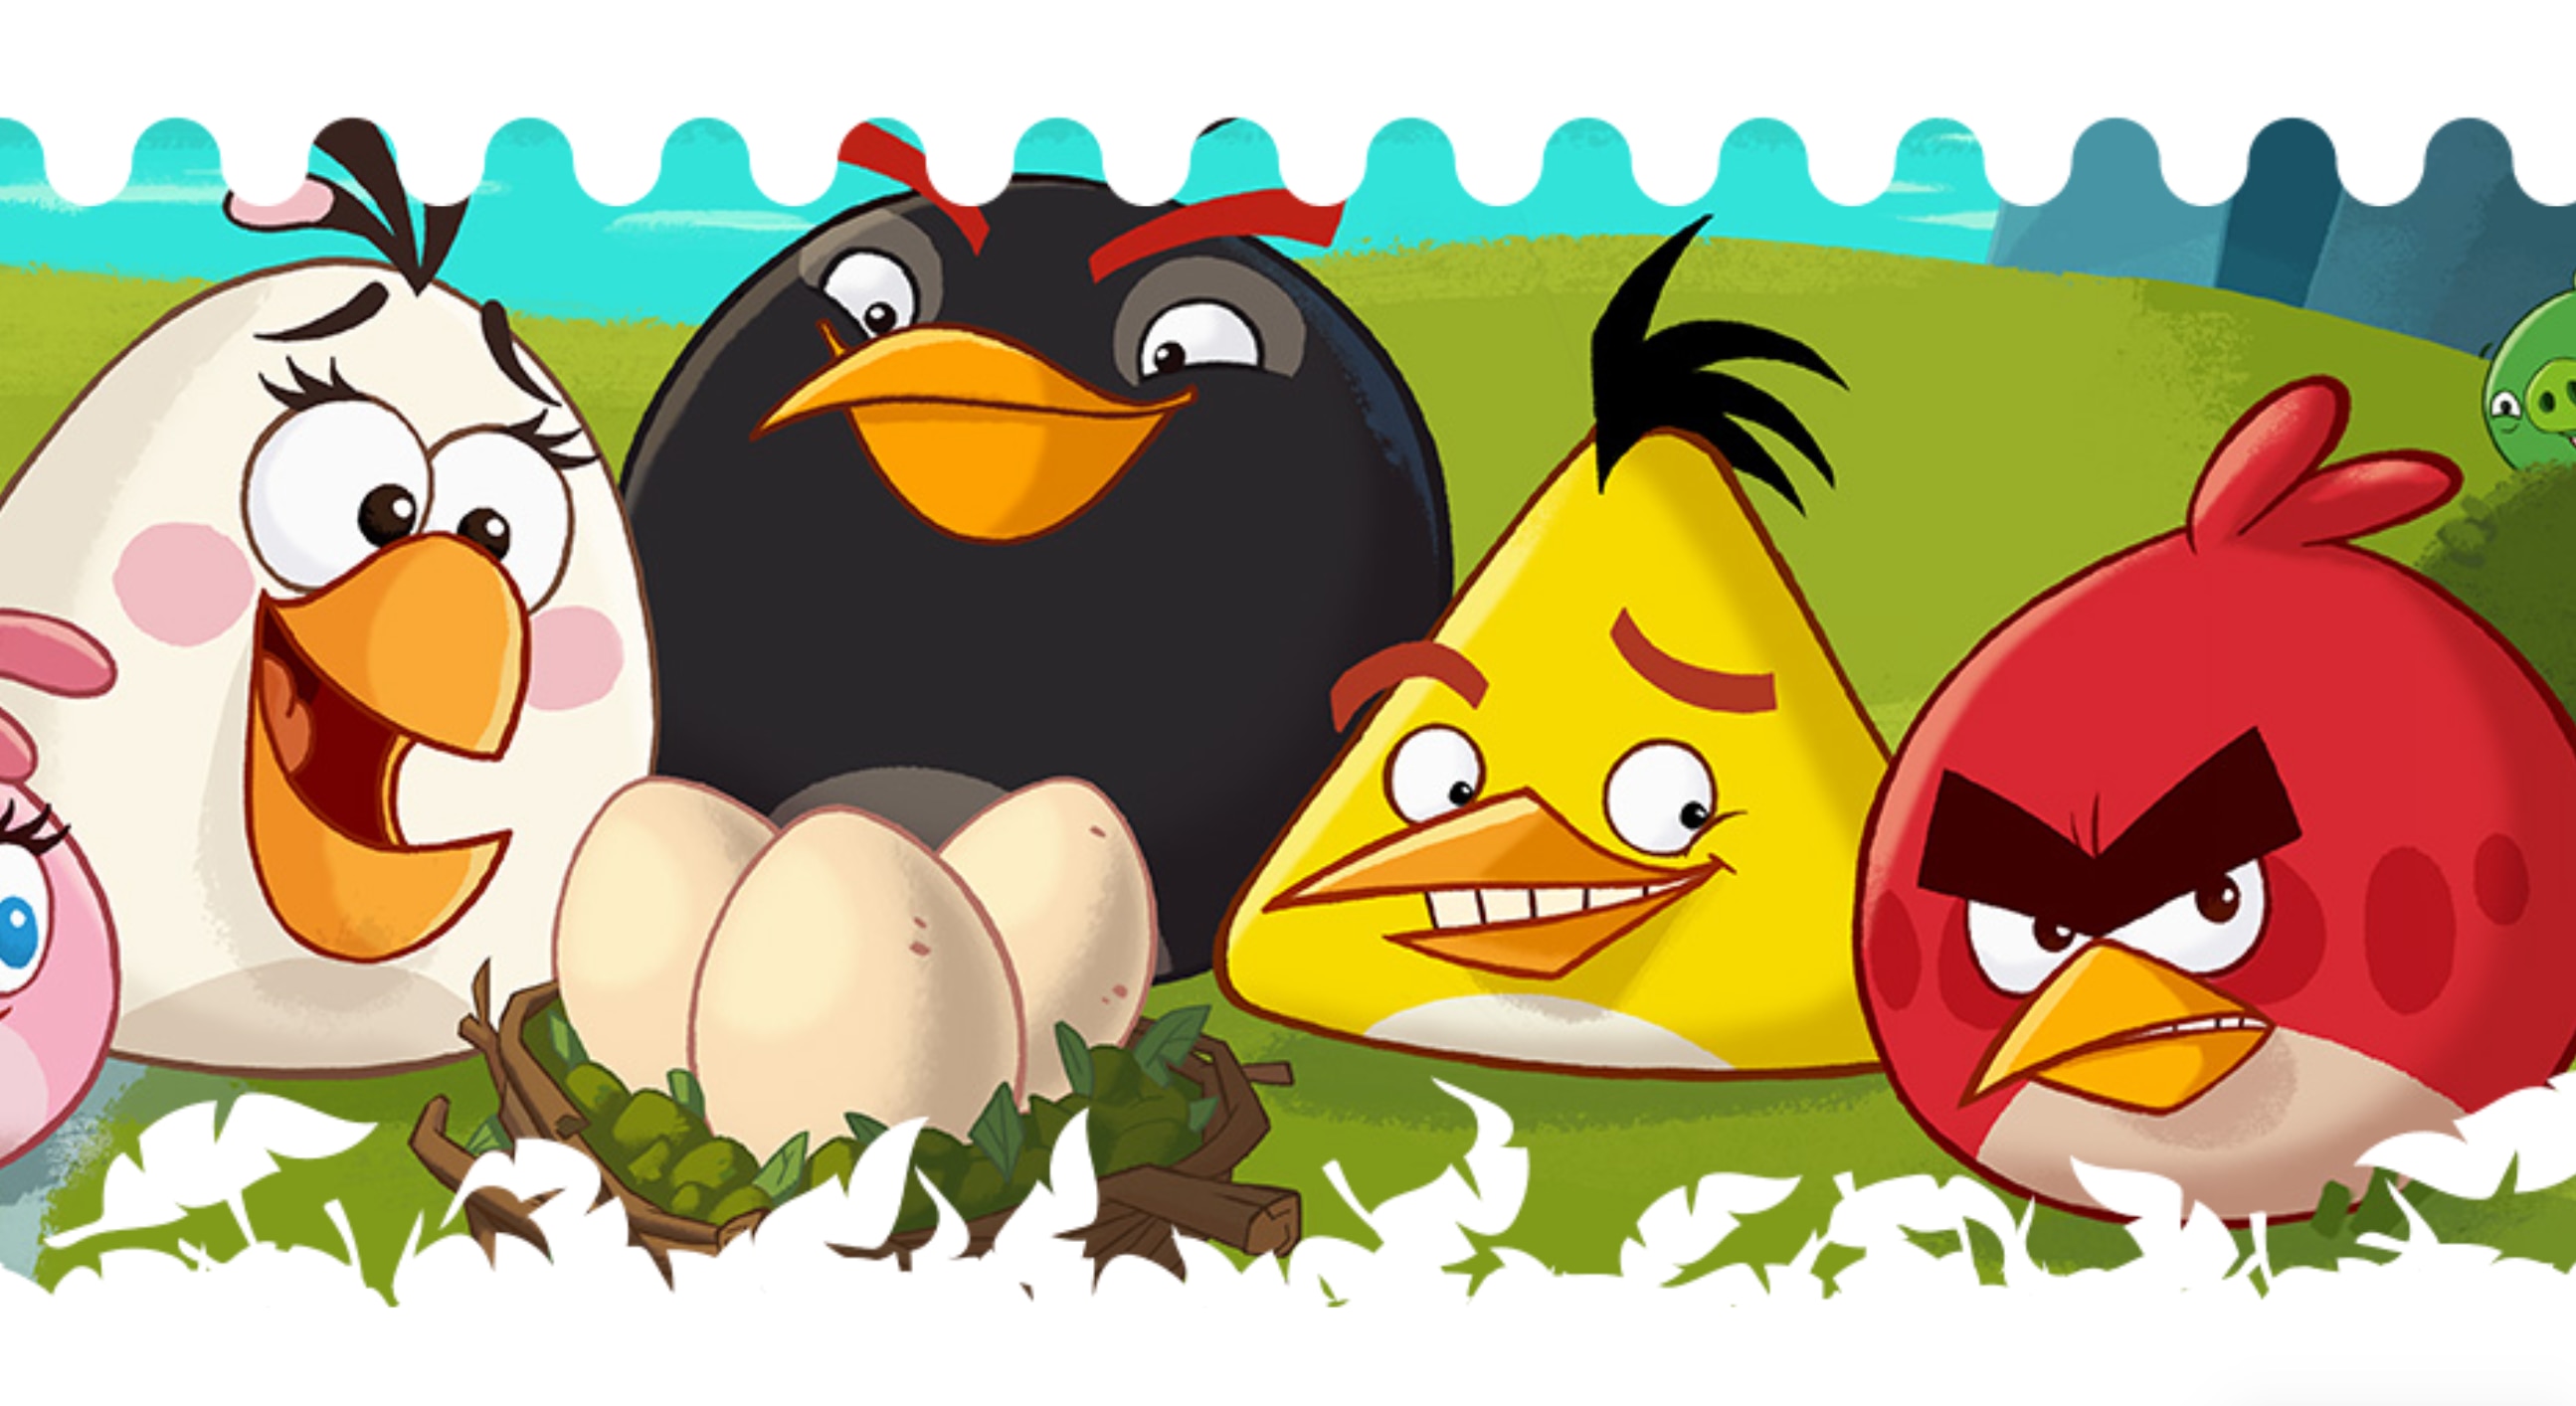 Angry Birds via official website 2019